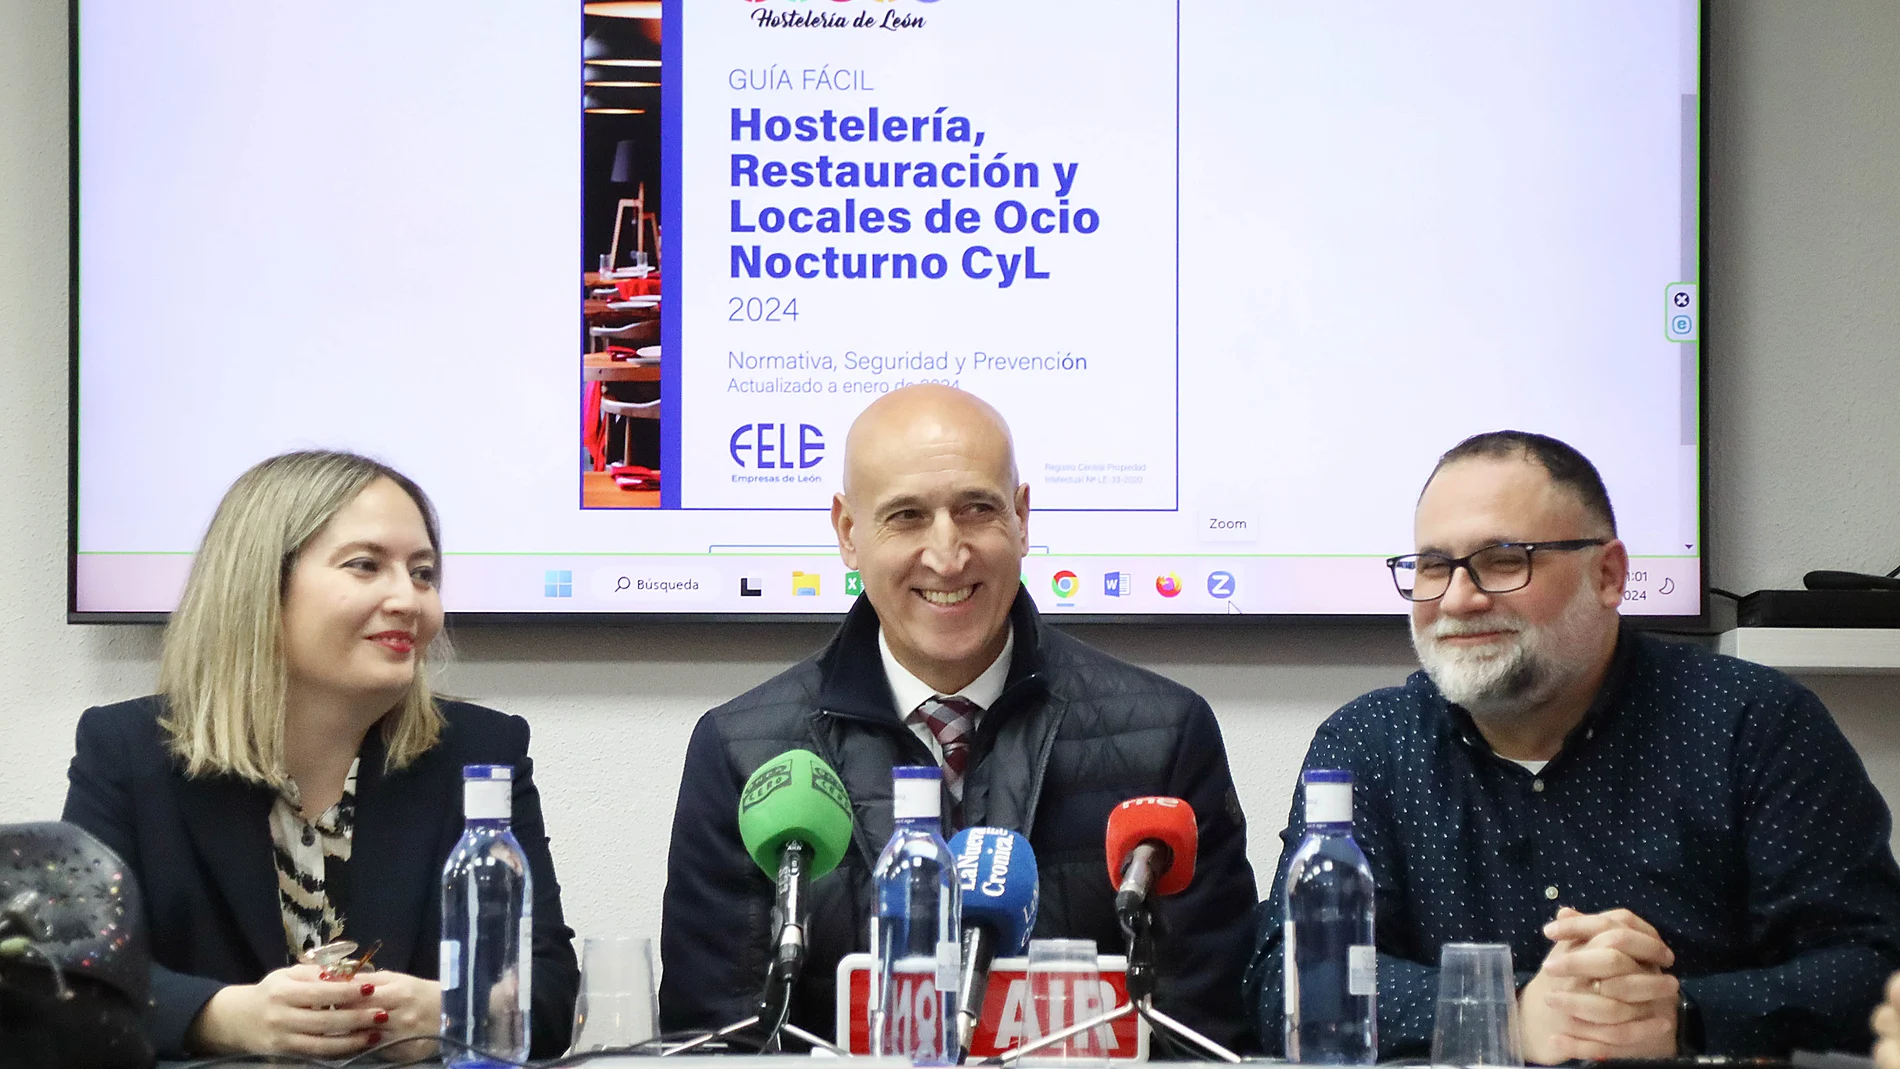 El alcalde de León, José Antonio Diez (C) con el presidente de la Asociación de Hostelería de León, Óscar García y la concejala de consumo, Camino Orejas